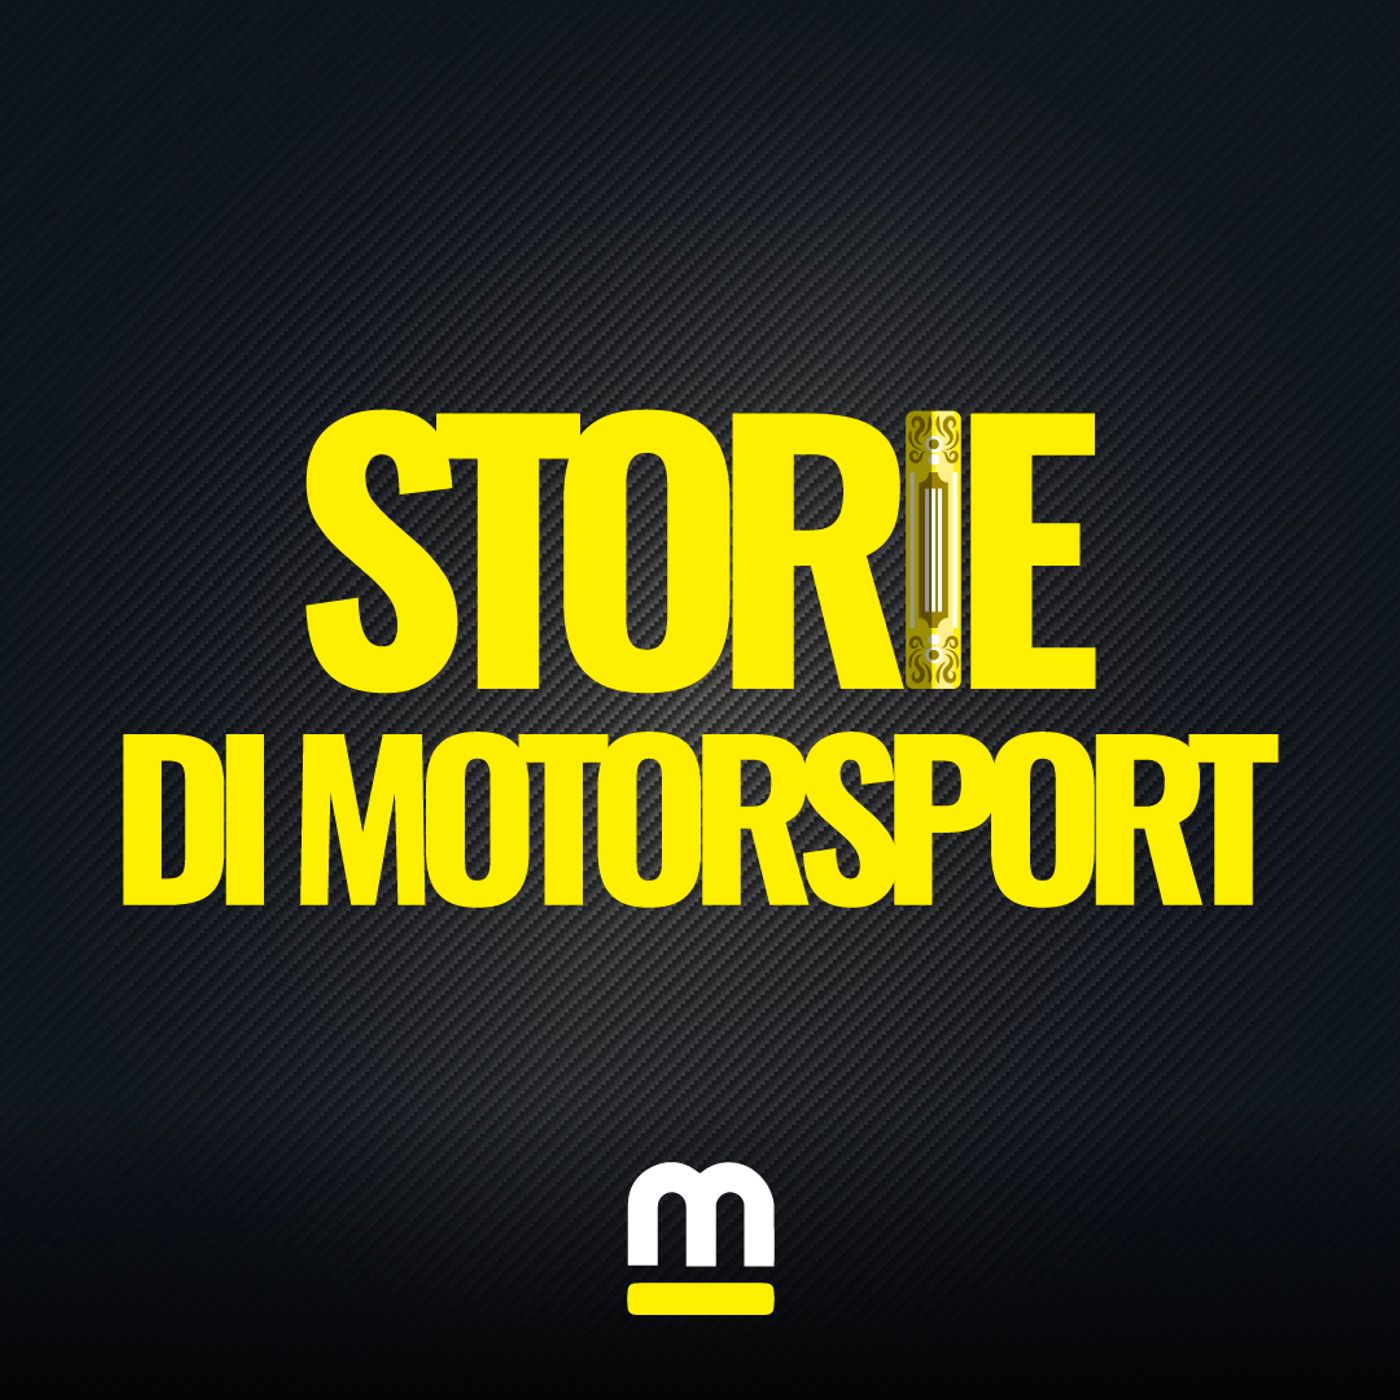 Storie di Motorsport | Ferrari, l'inizio dell'era di Niki Lauda